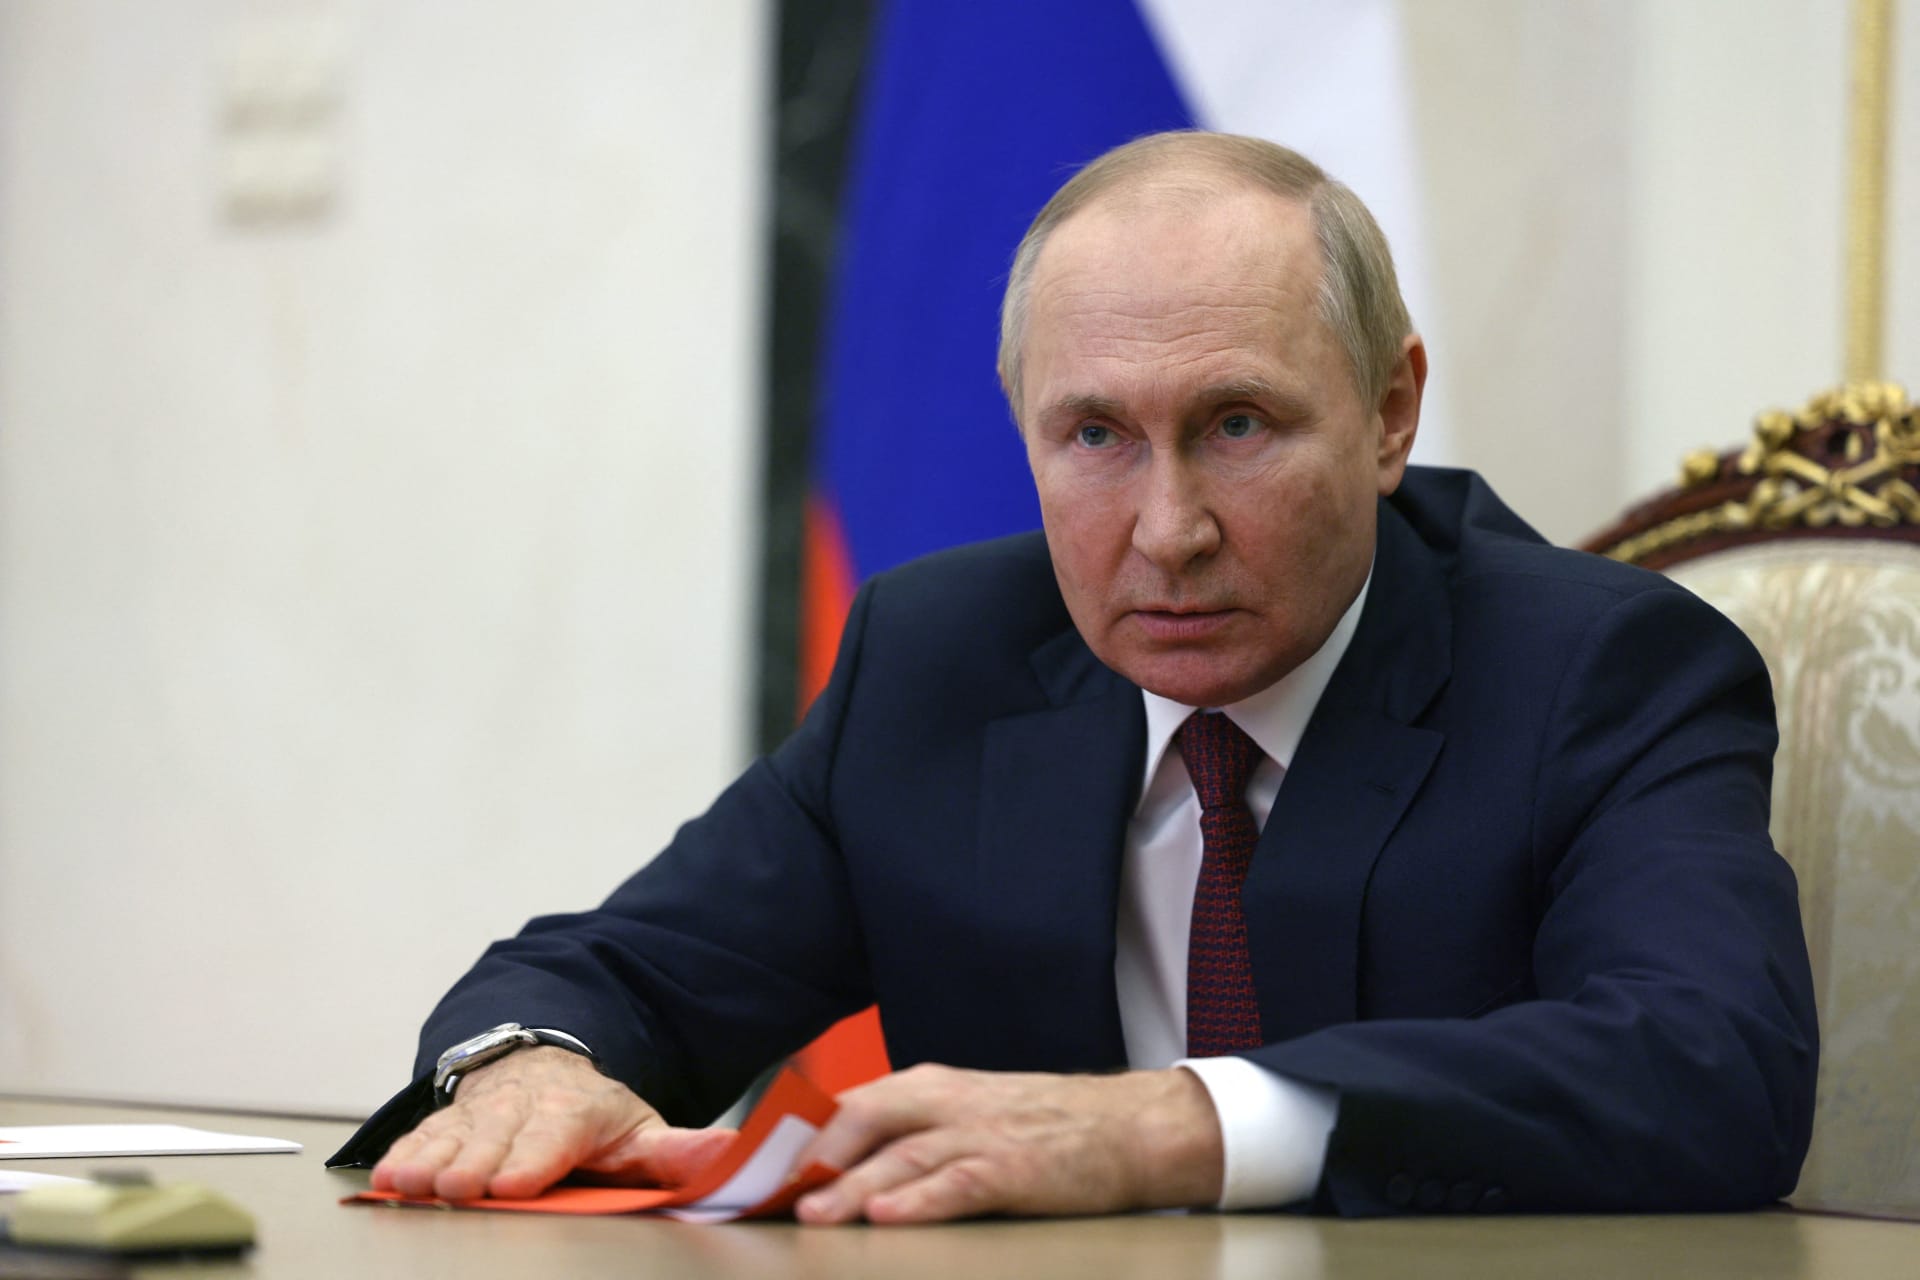 بوتين: سكان المناطق الأربع اختاروا الانضمام إلى روسيا وسنكون أوفياء لهذا القرار